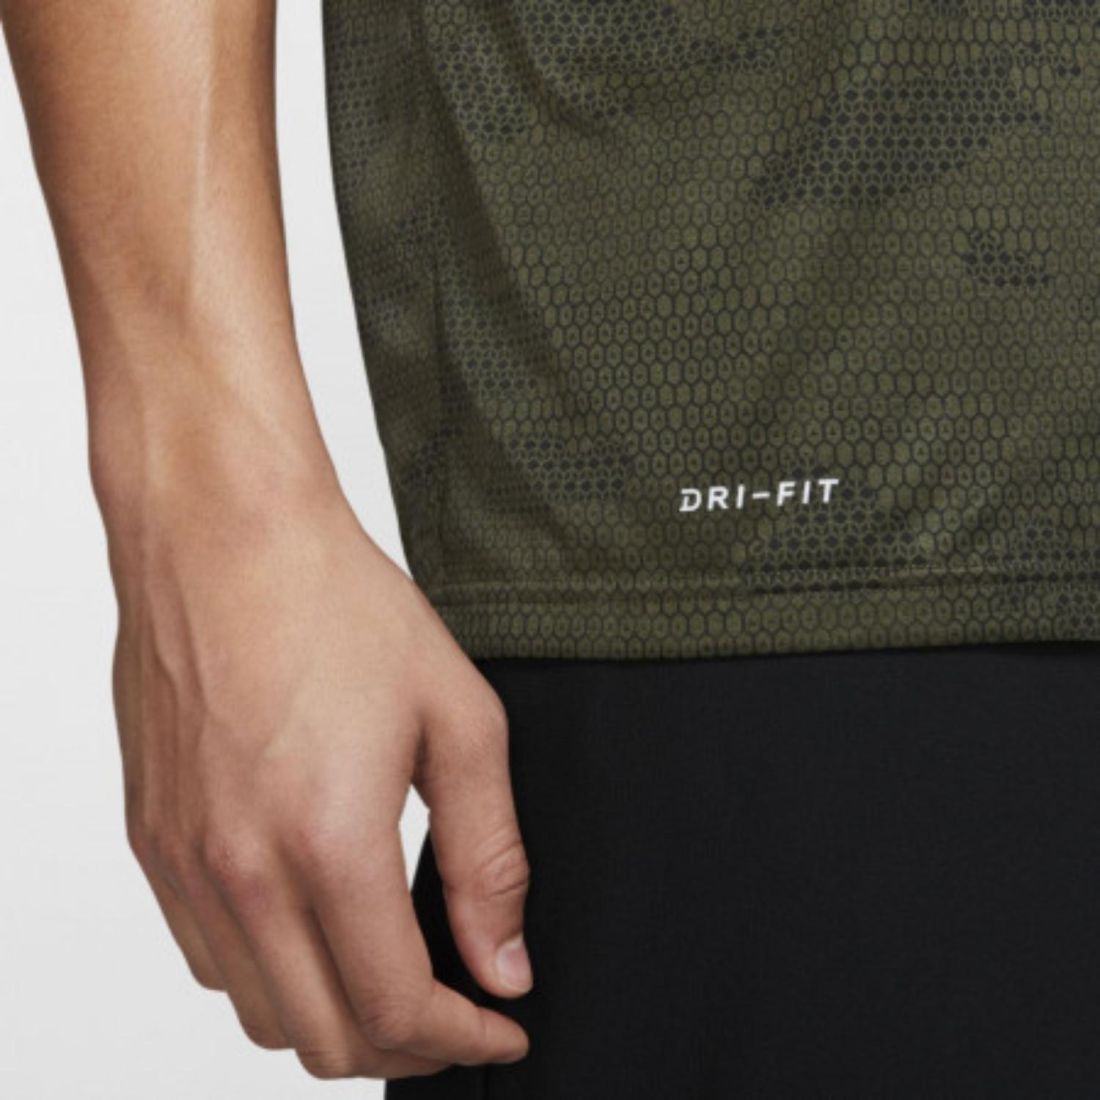 Комфортная мужская футболка Nike Dri-FIT Legend